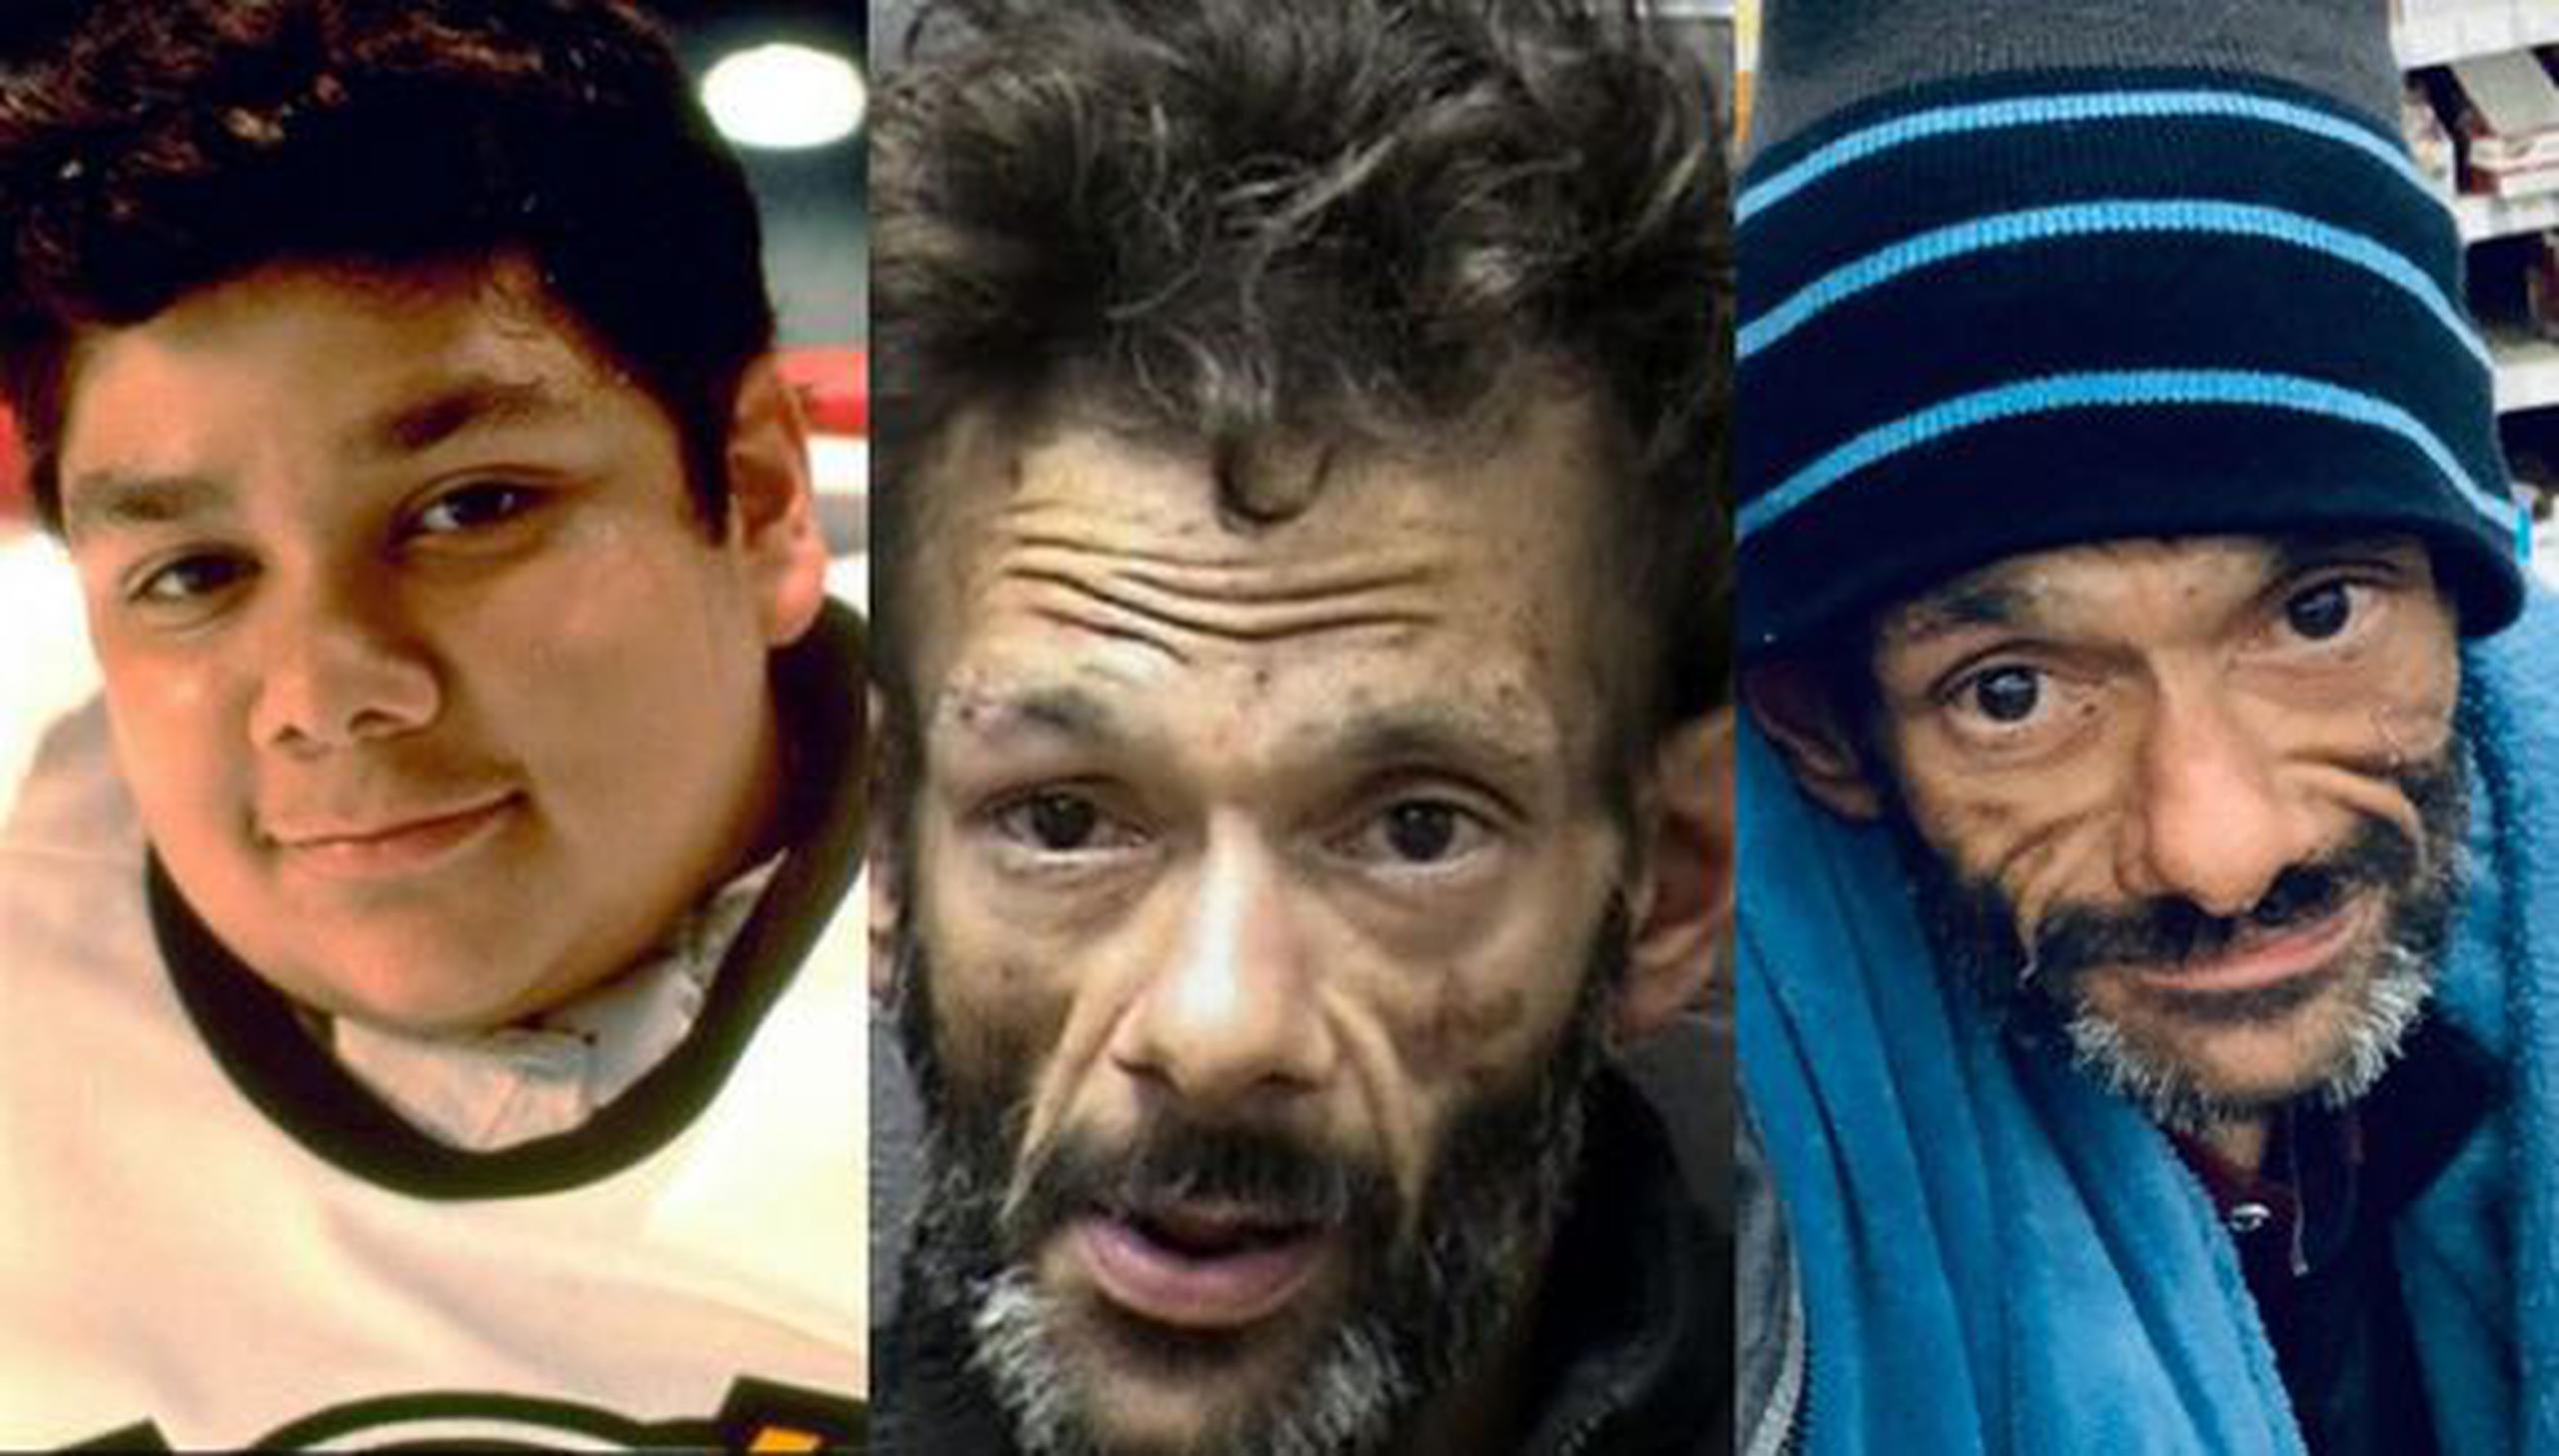 Shaun Weiss pasó de ser el actor juvenil de "The Mighty Ducks" a buscarse la vida en varios roles... hasta que las drogas lo golpearon.